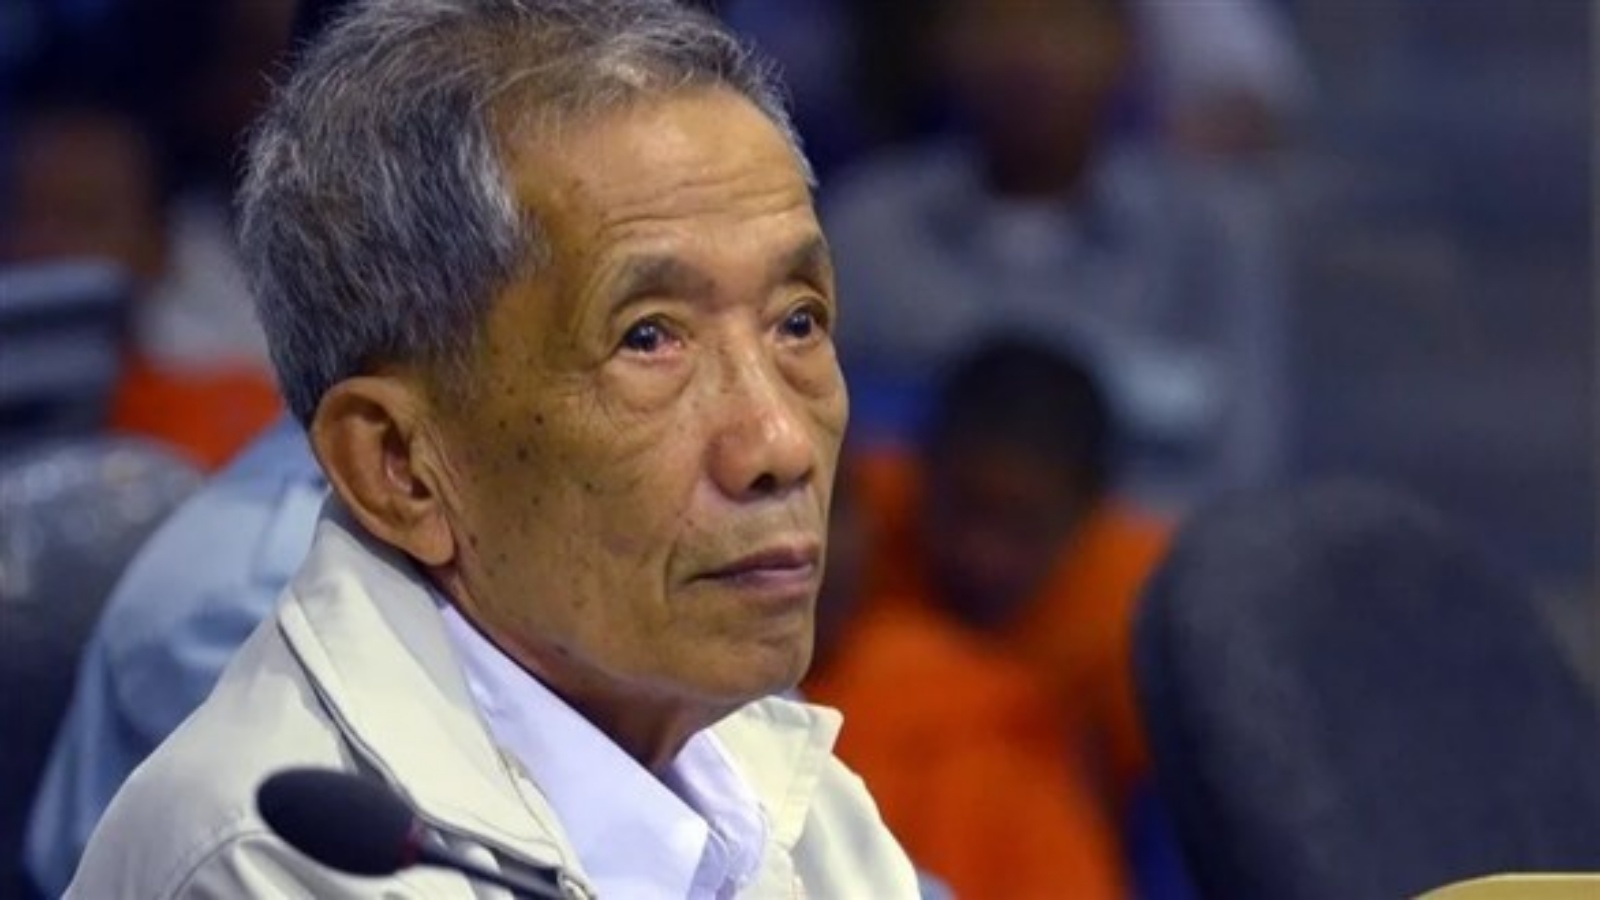 اعترف دوتش بارتكاب فظاعات في كمبوديا بين تعذيب وإعادامات